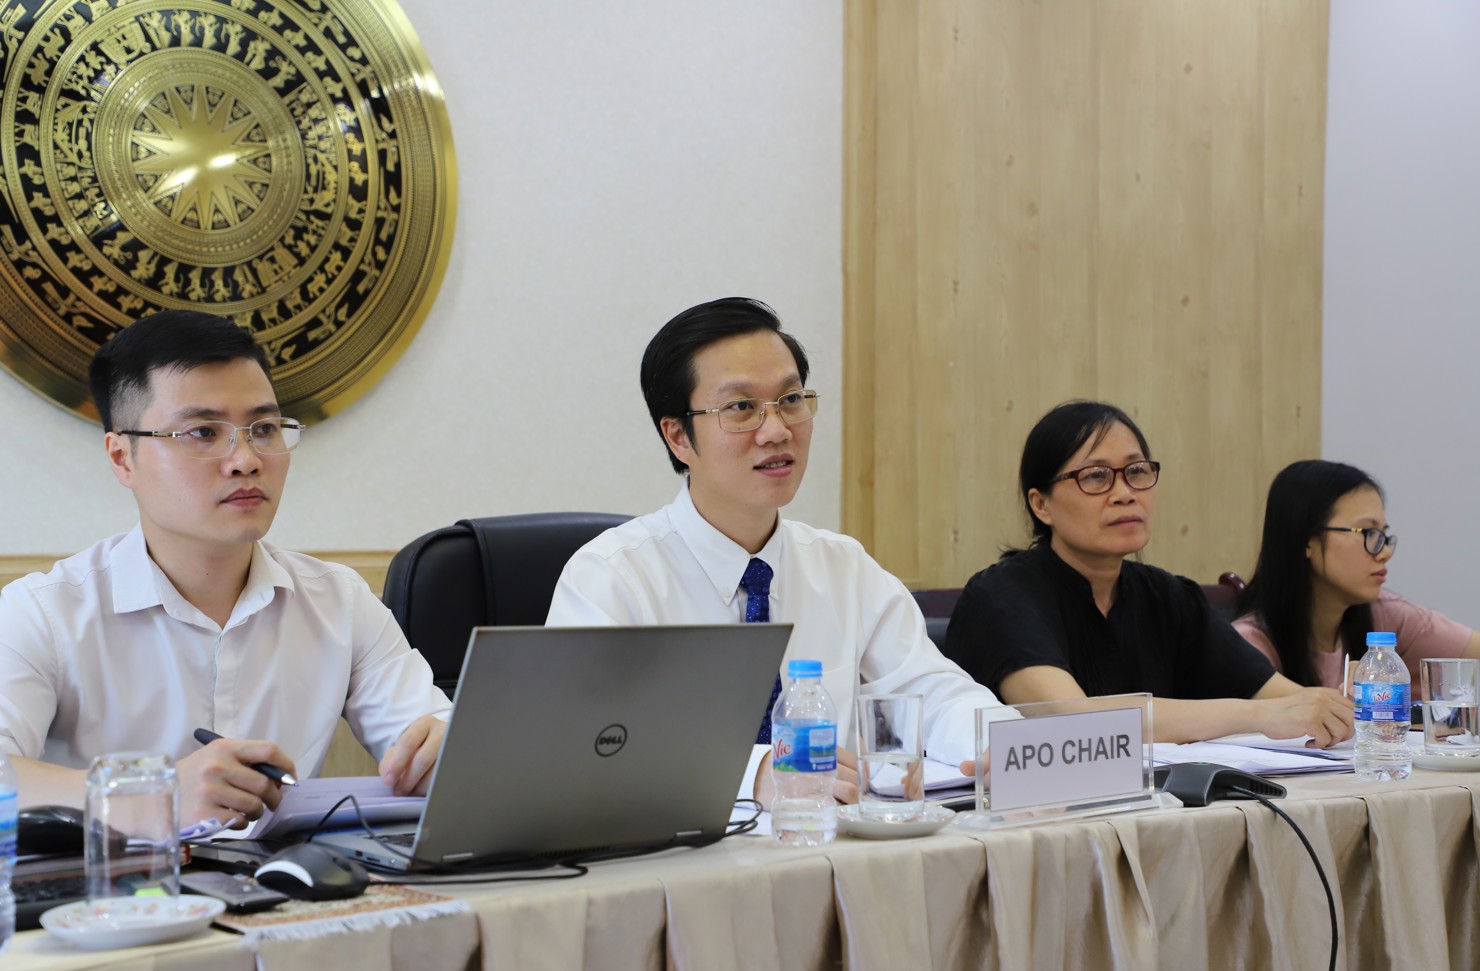  Phó Tổng cục trưởng Hà Minh Hiệp đắc cử Chủ tịch APO nhiệm kỳ 2020-2021.